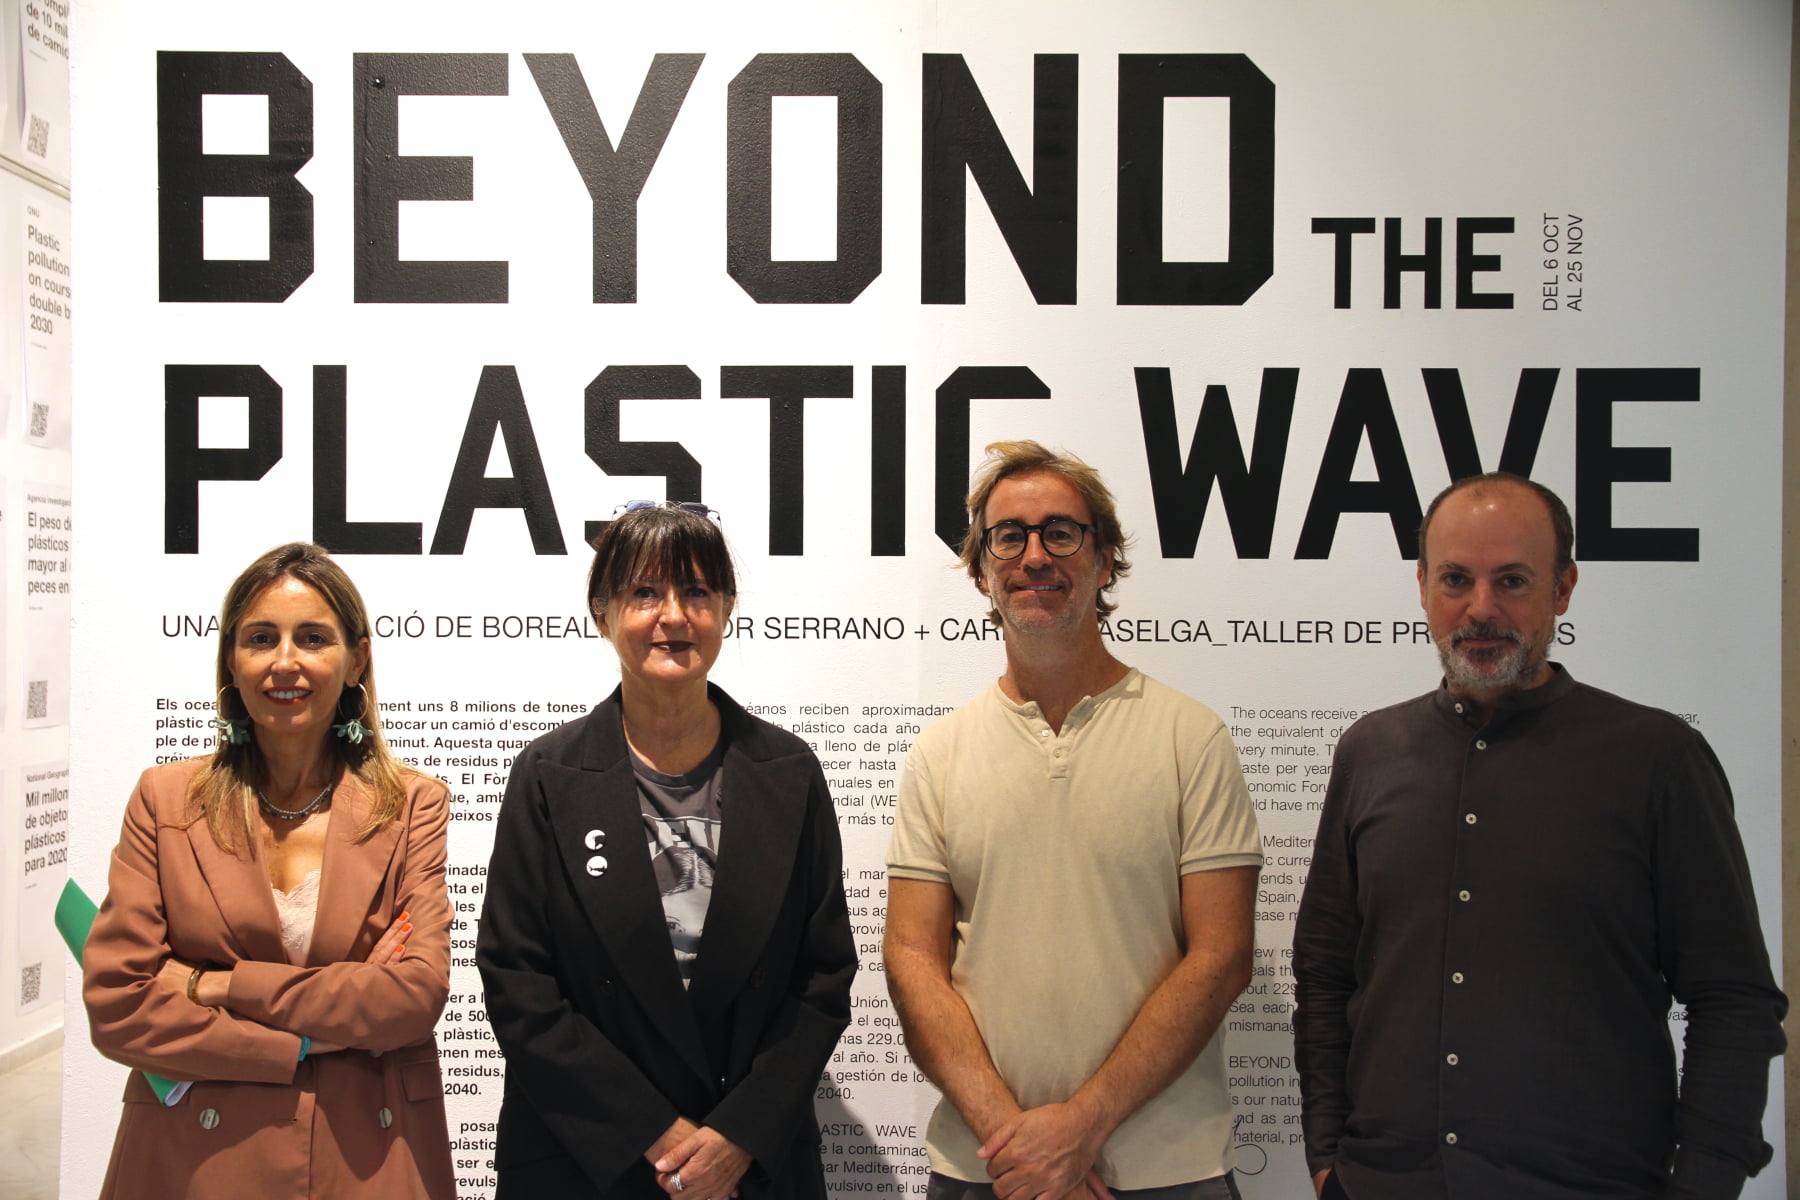 Foto de los responsables de la Expo Beyond the plasctic wave